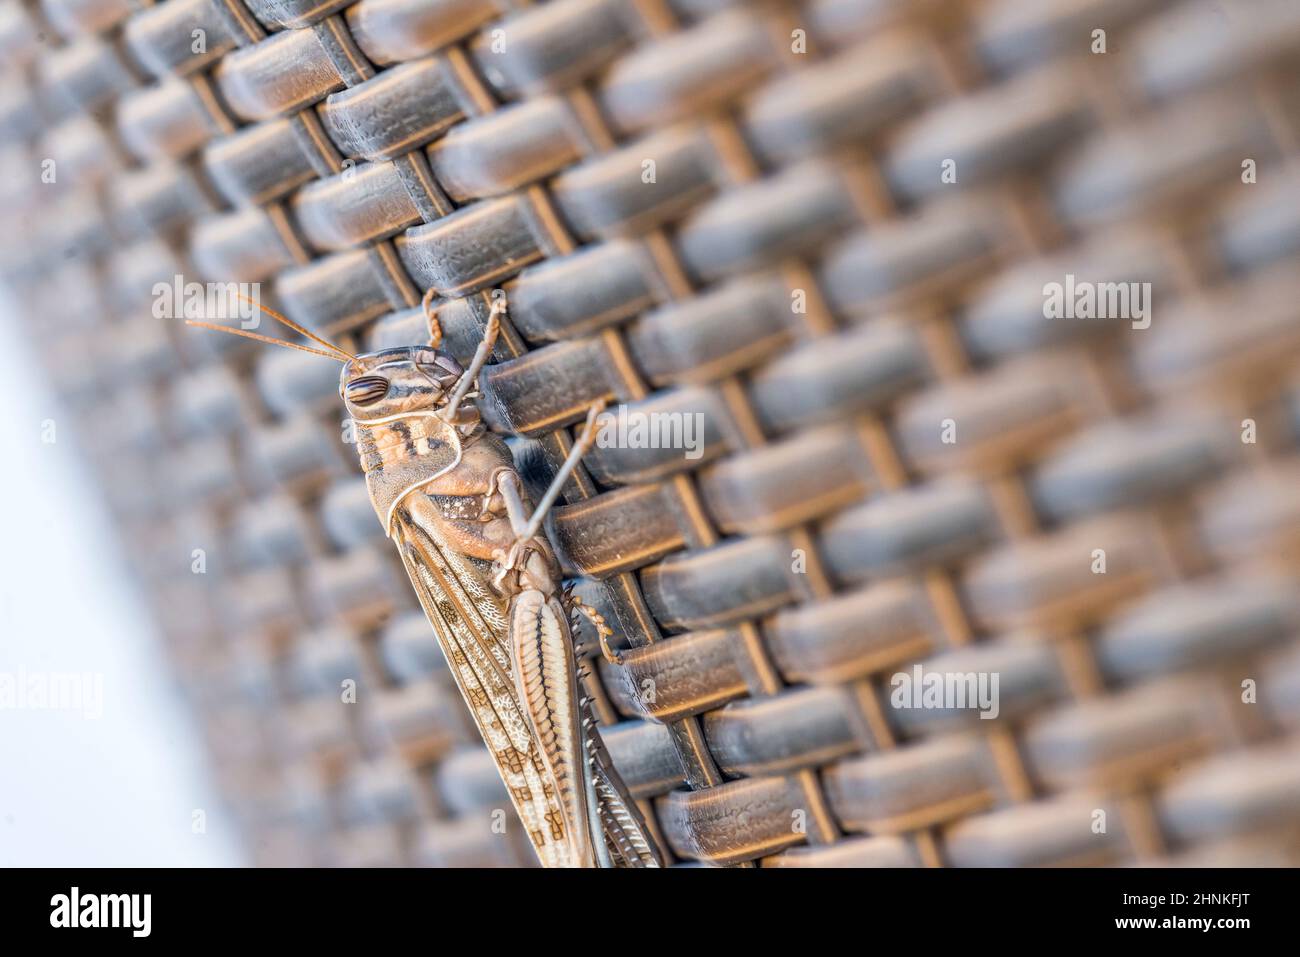 Desert locust (Schistocerca gregaria). Stock Photo